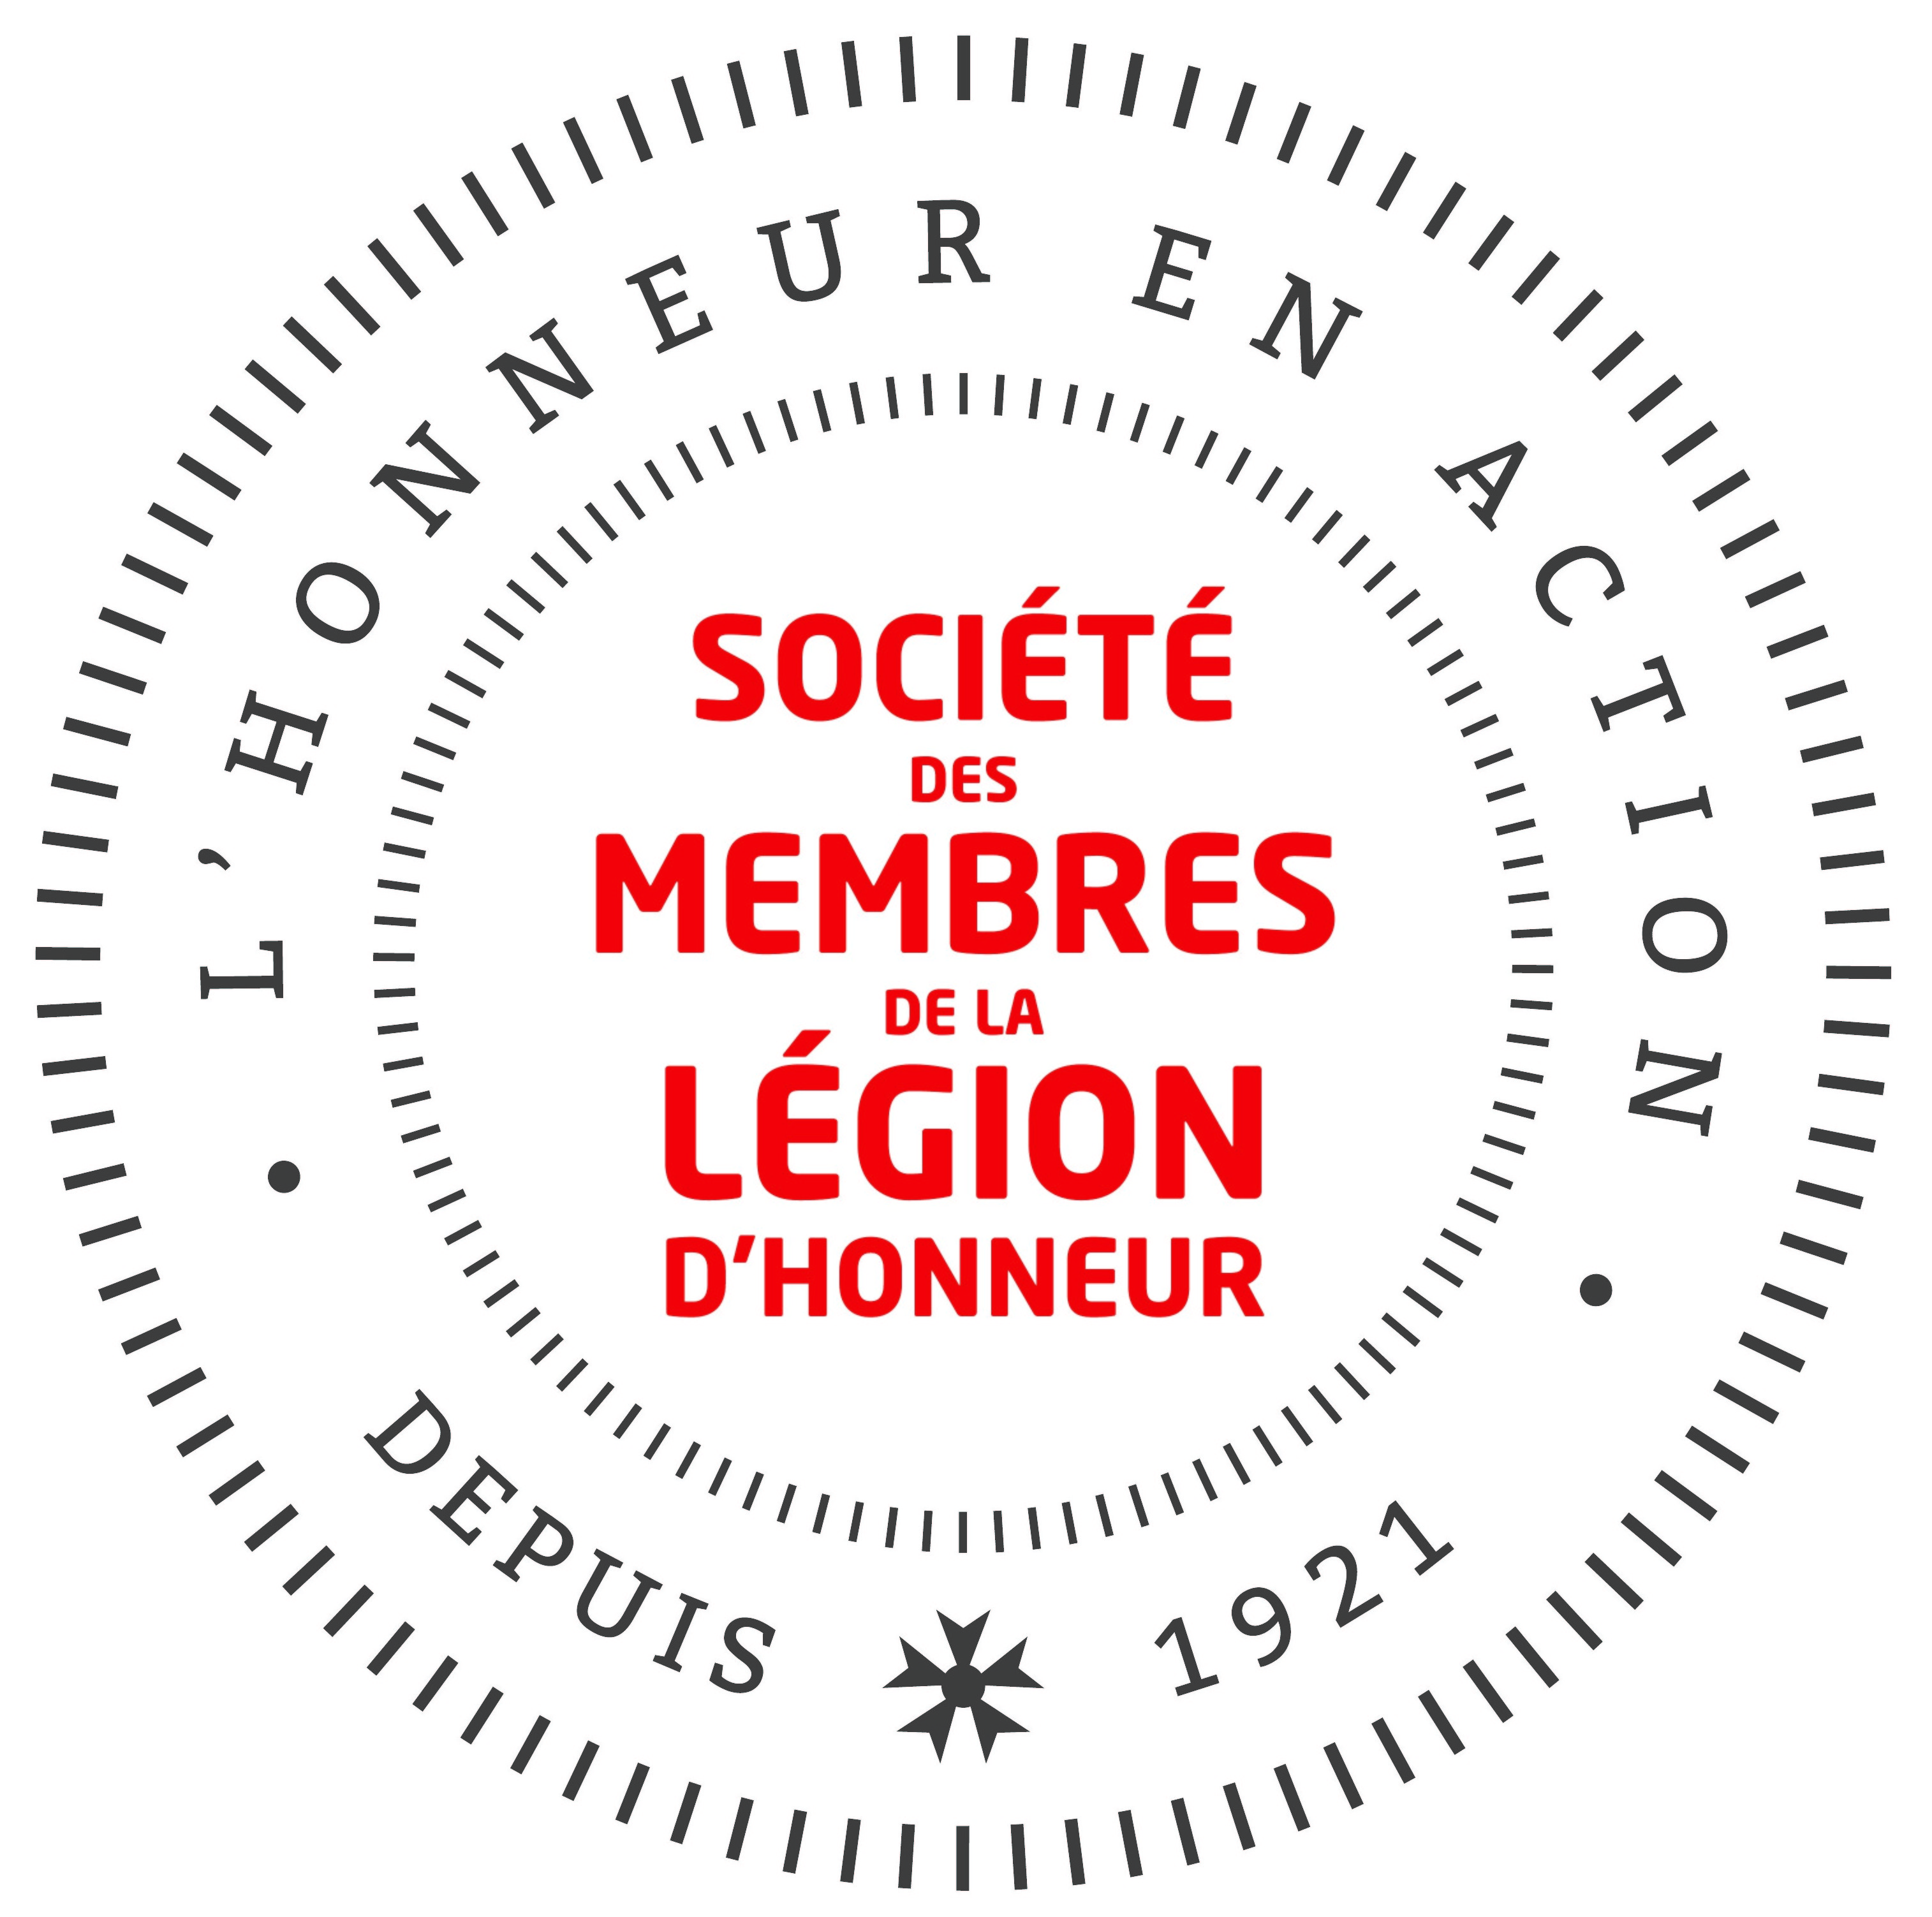 La Société des membres de la Légion d'honneur